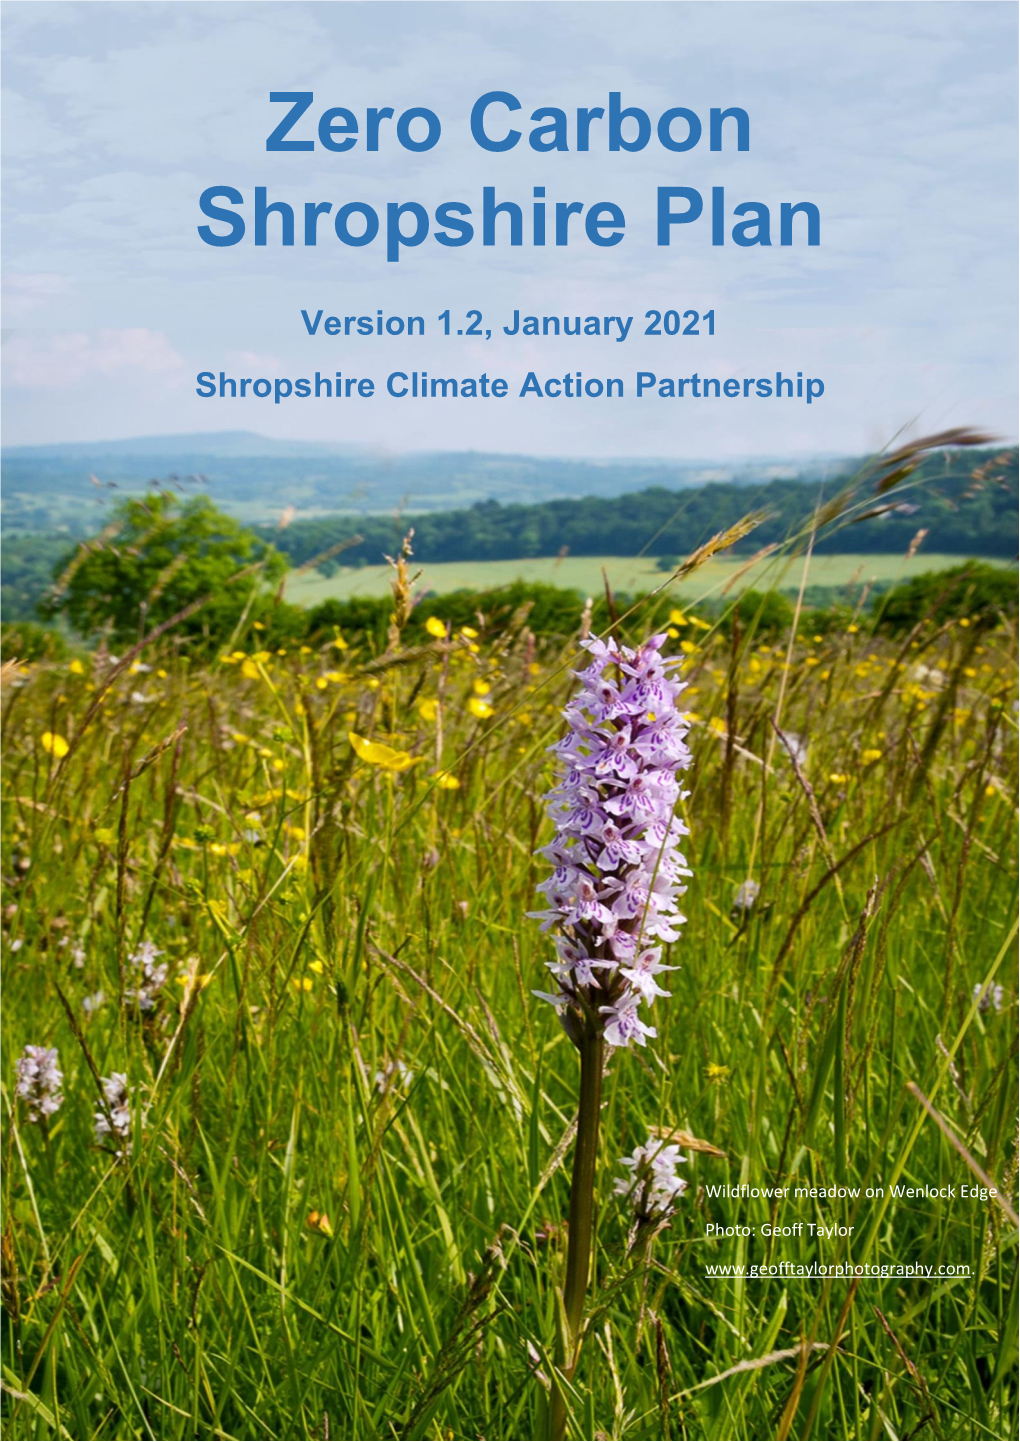 The Zero Carbon Shropshire Plan